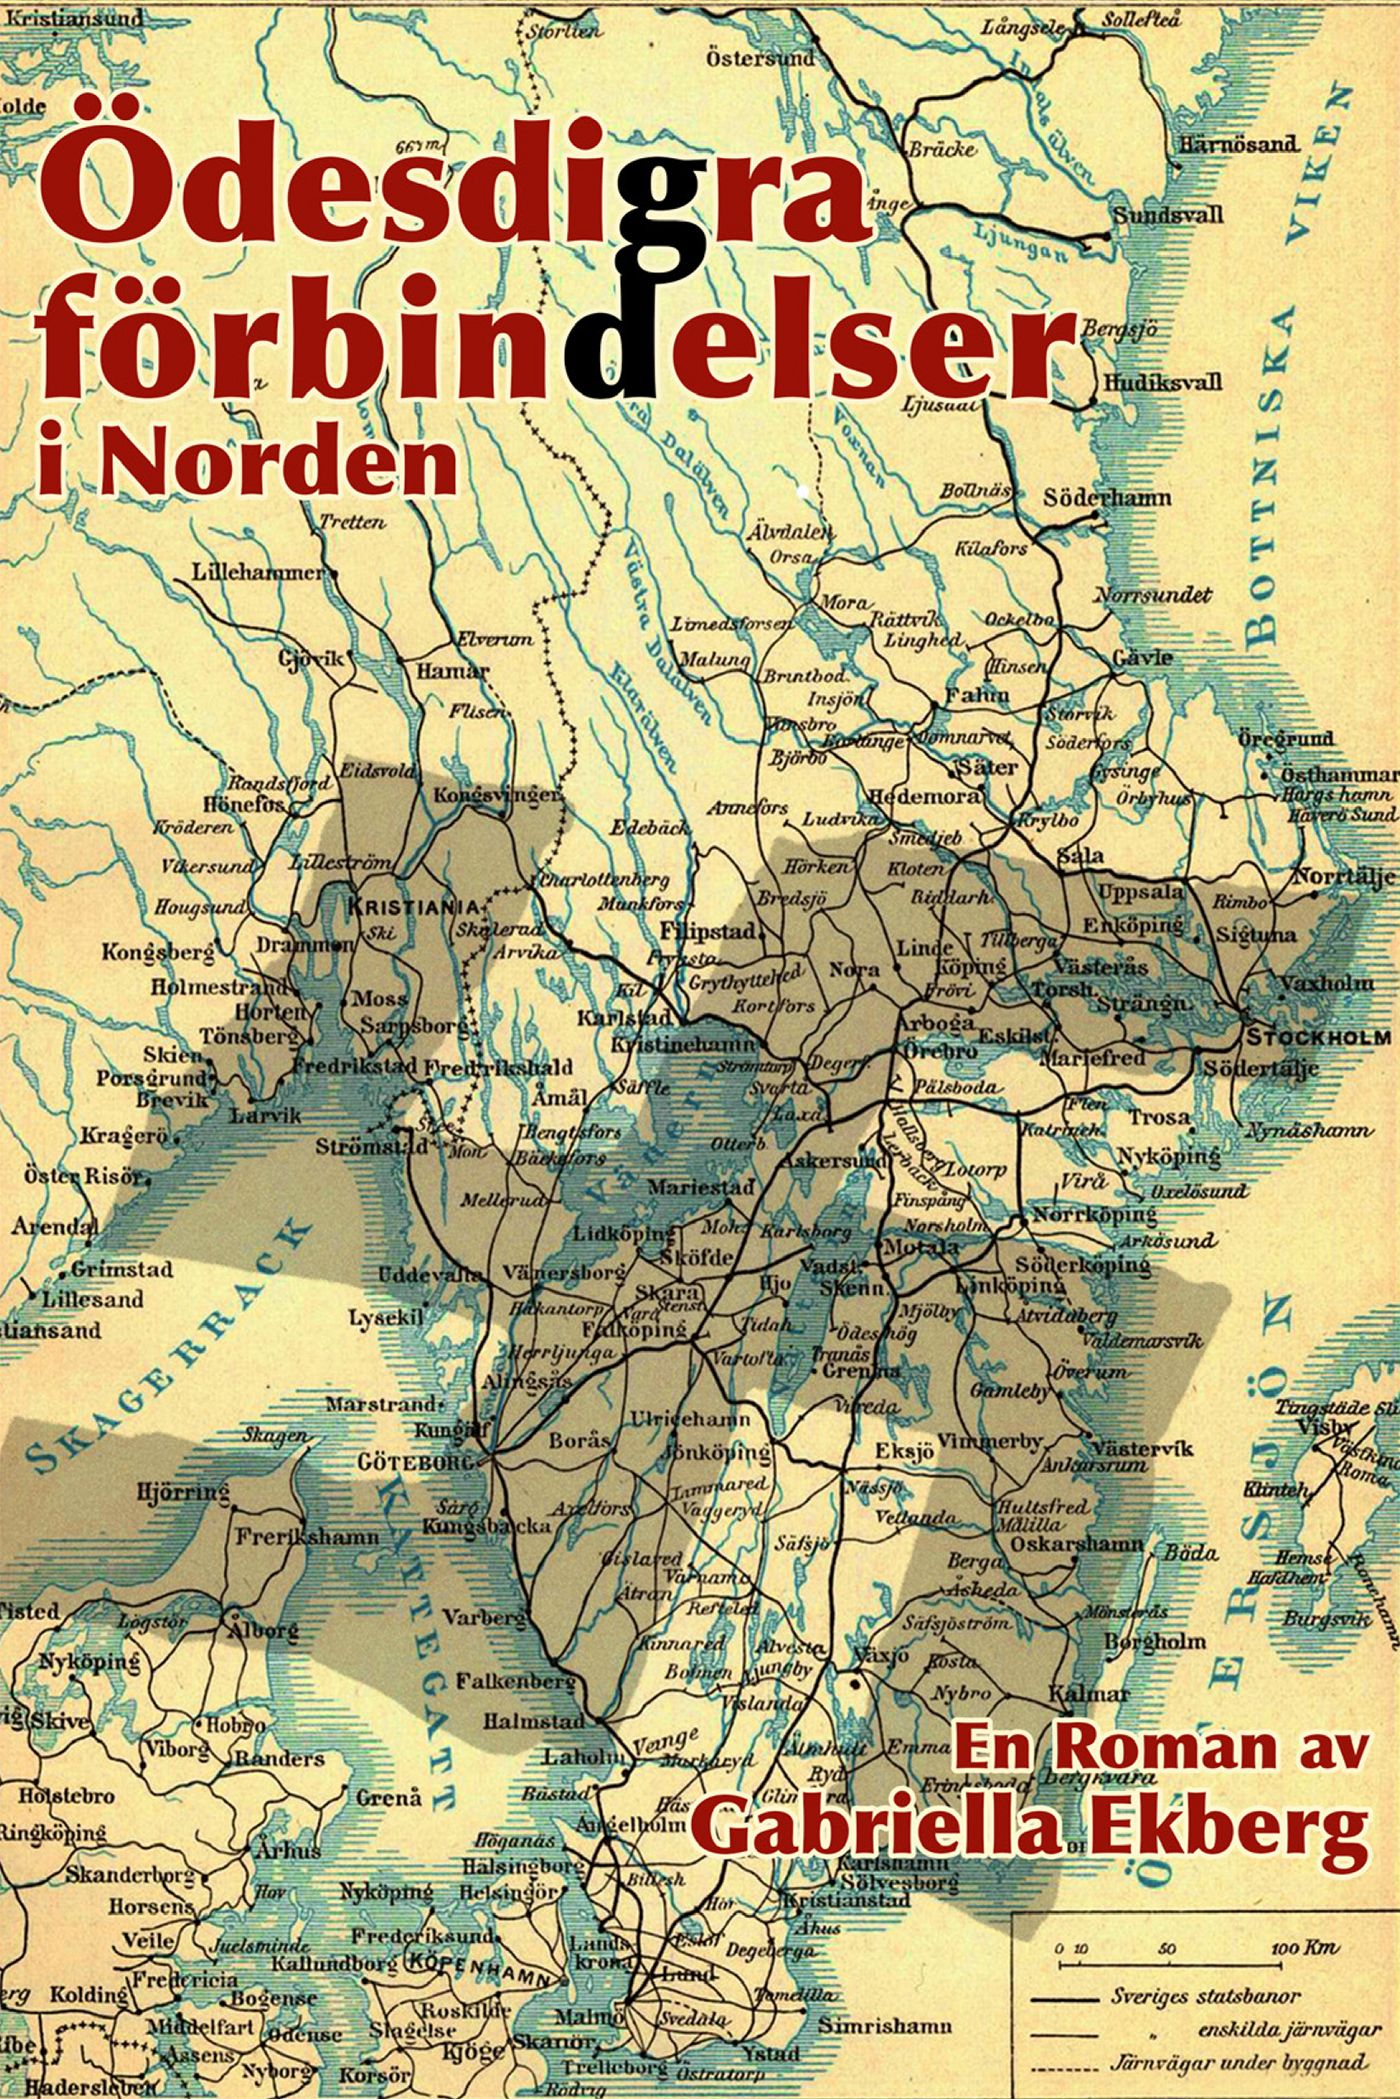 Ödesdigra förbindelser i Norden, e-bok av Gabriella Ekberg